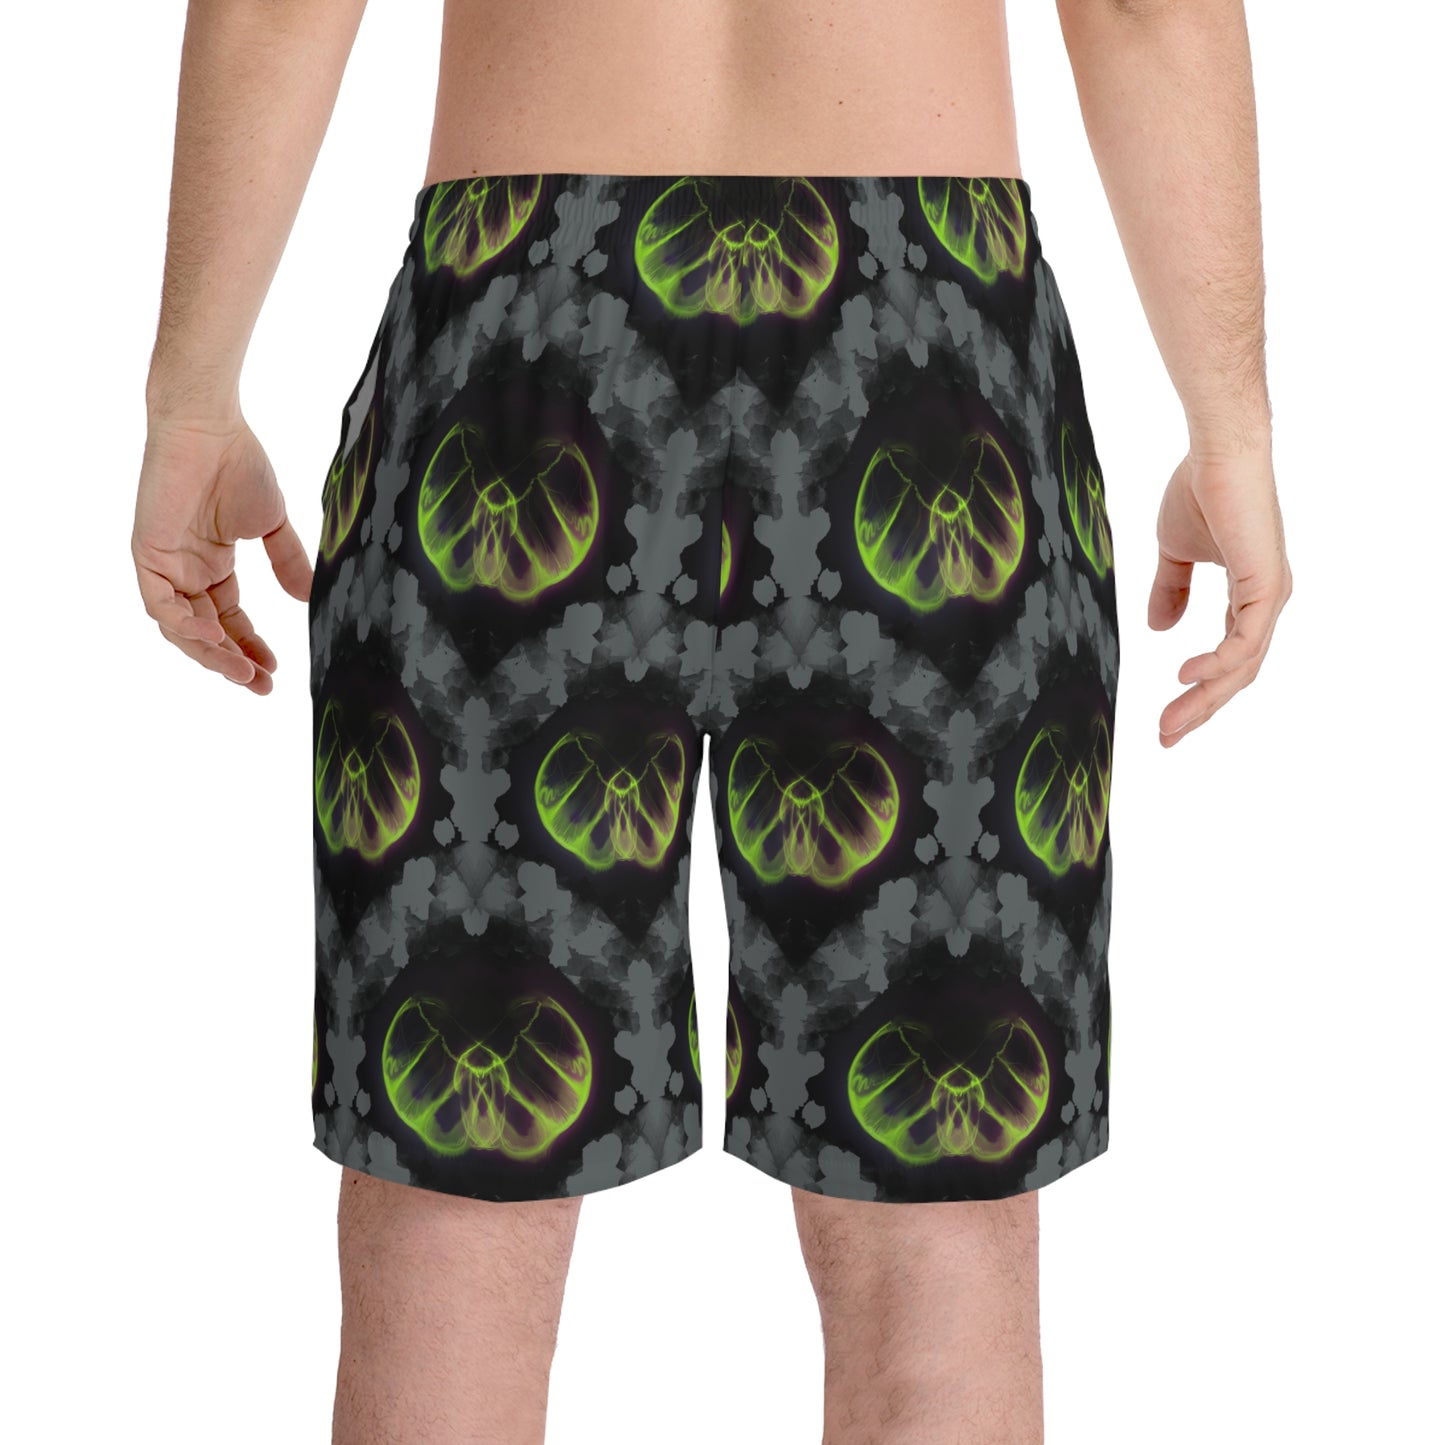 Phantasm Men's Elastic Beach Shorts